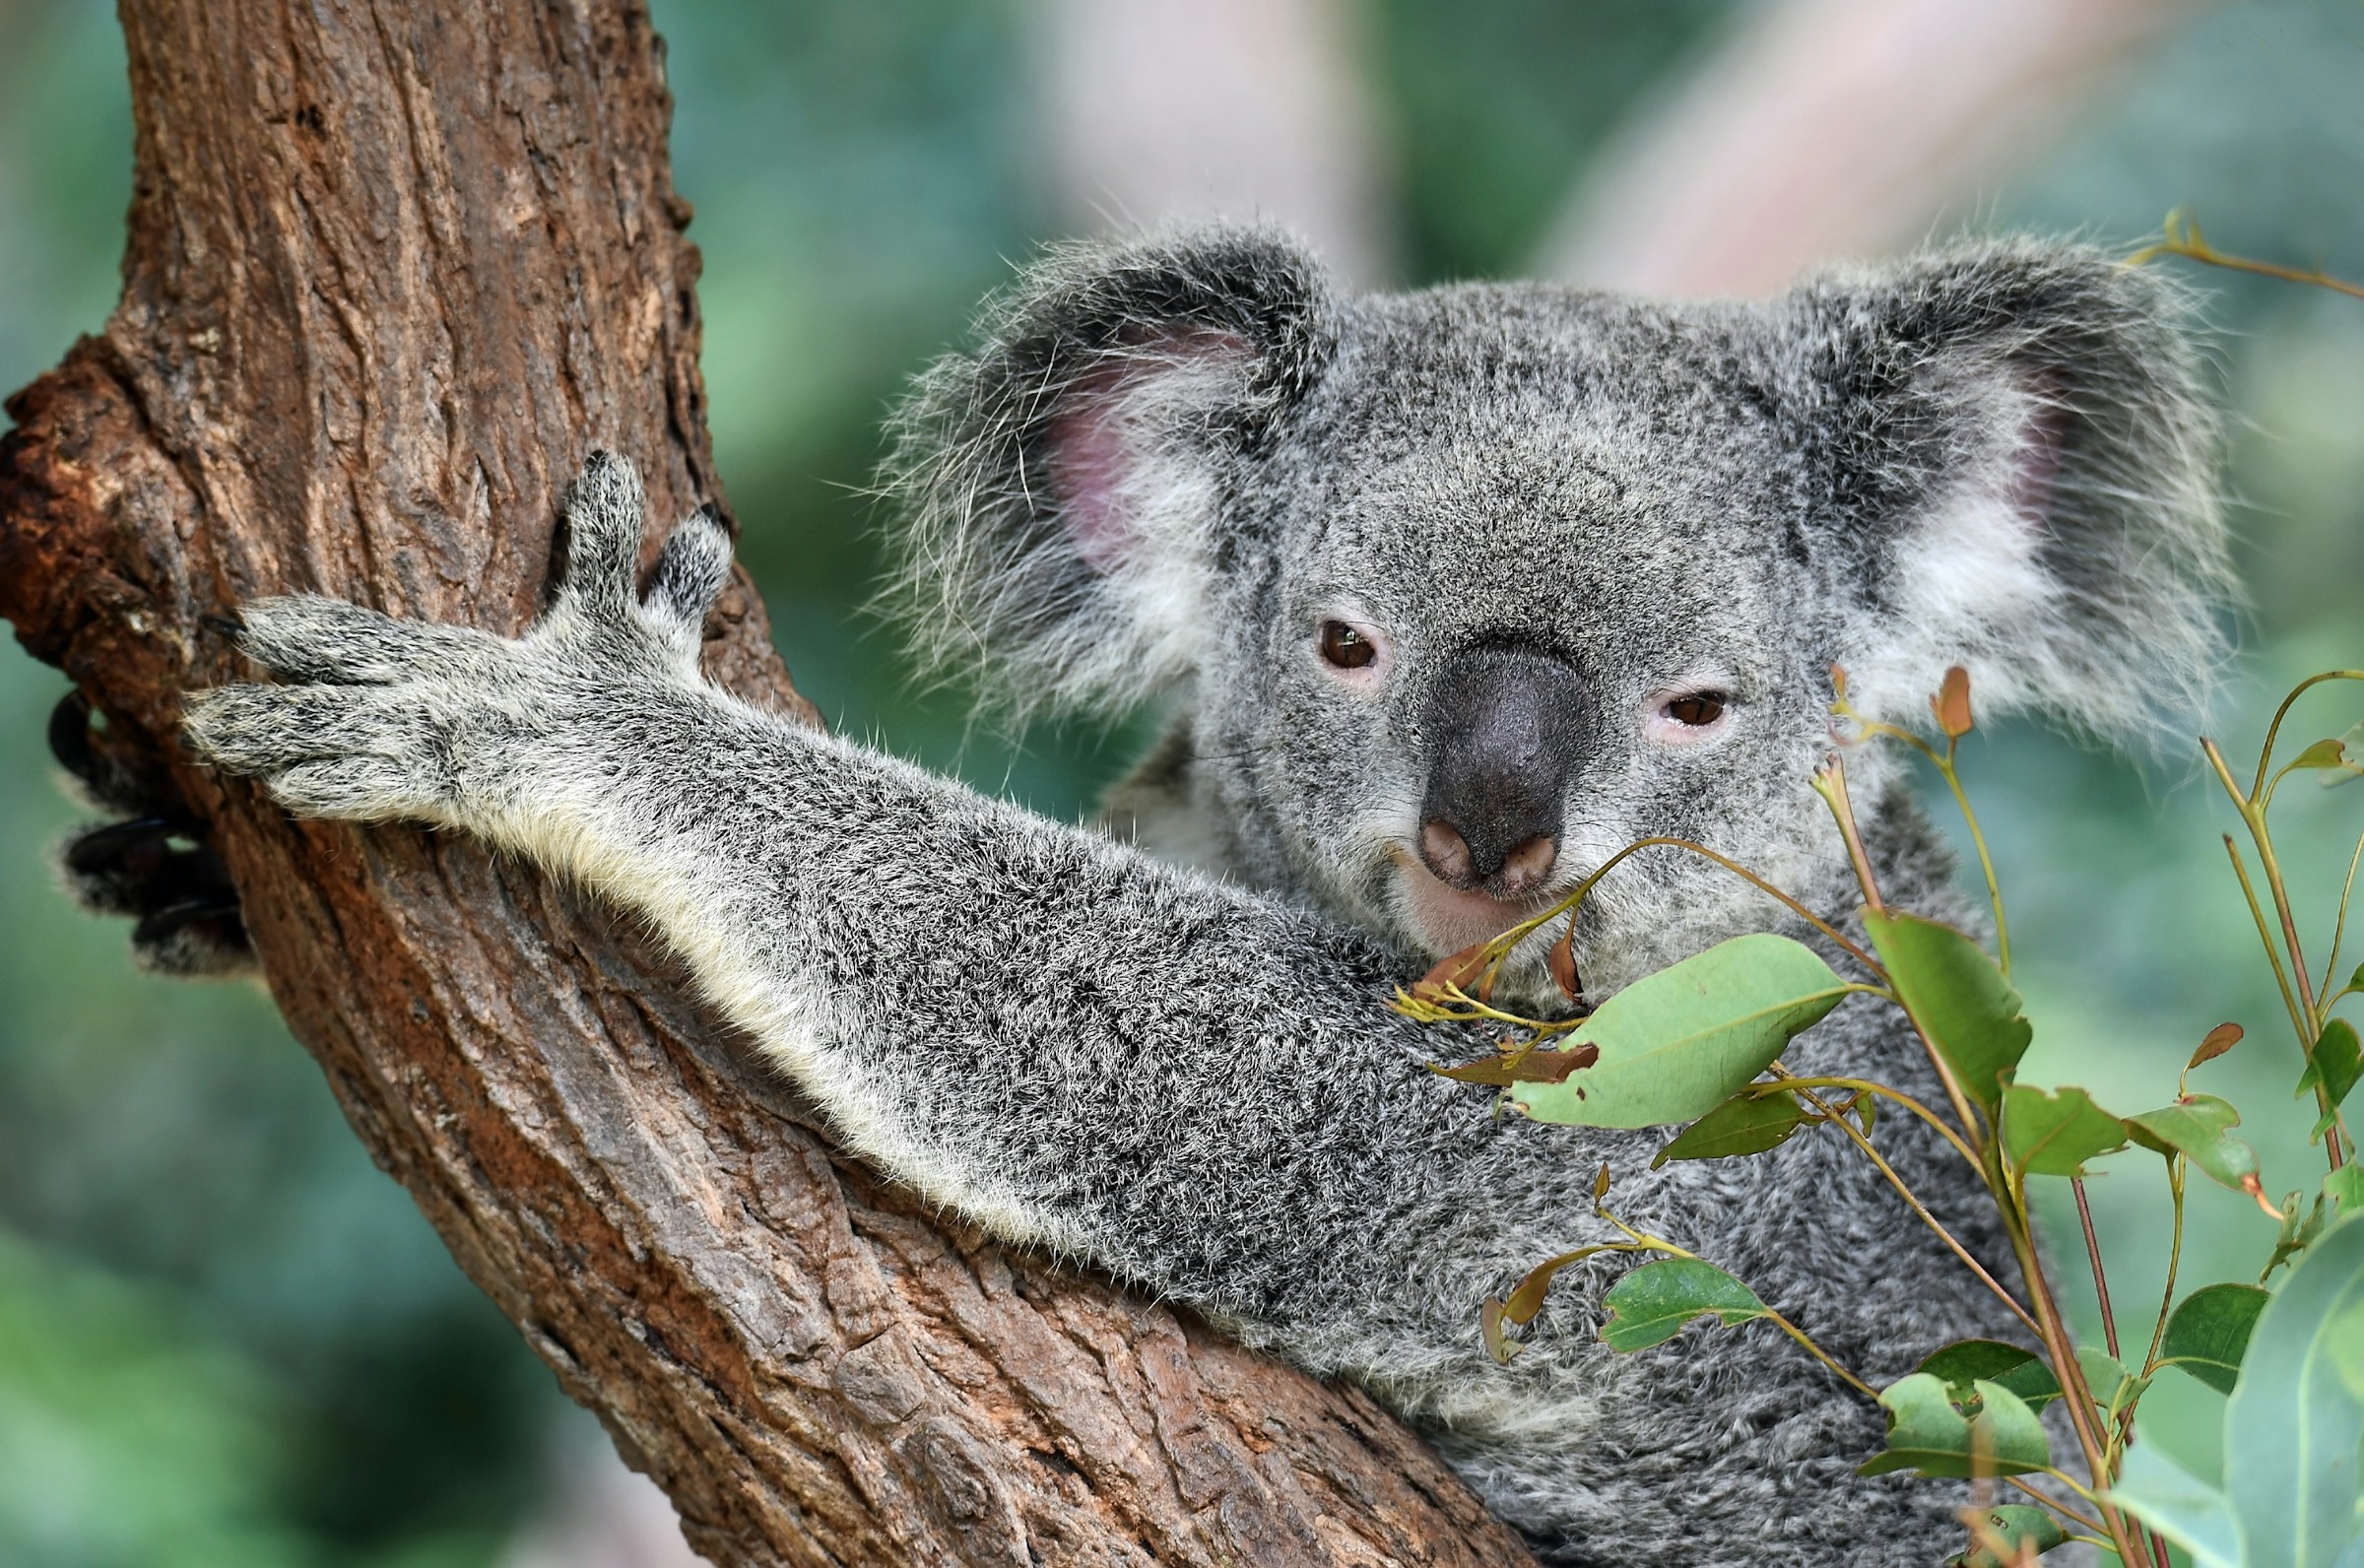 Koala som sitter på gren och äter eukalyptusblad i sitt naturliga habitat i Australien.